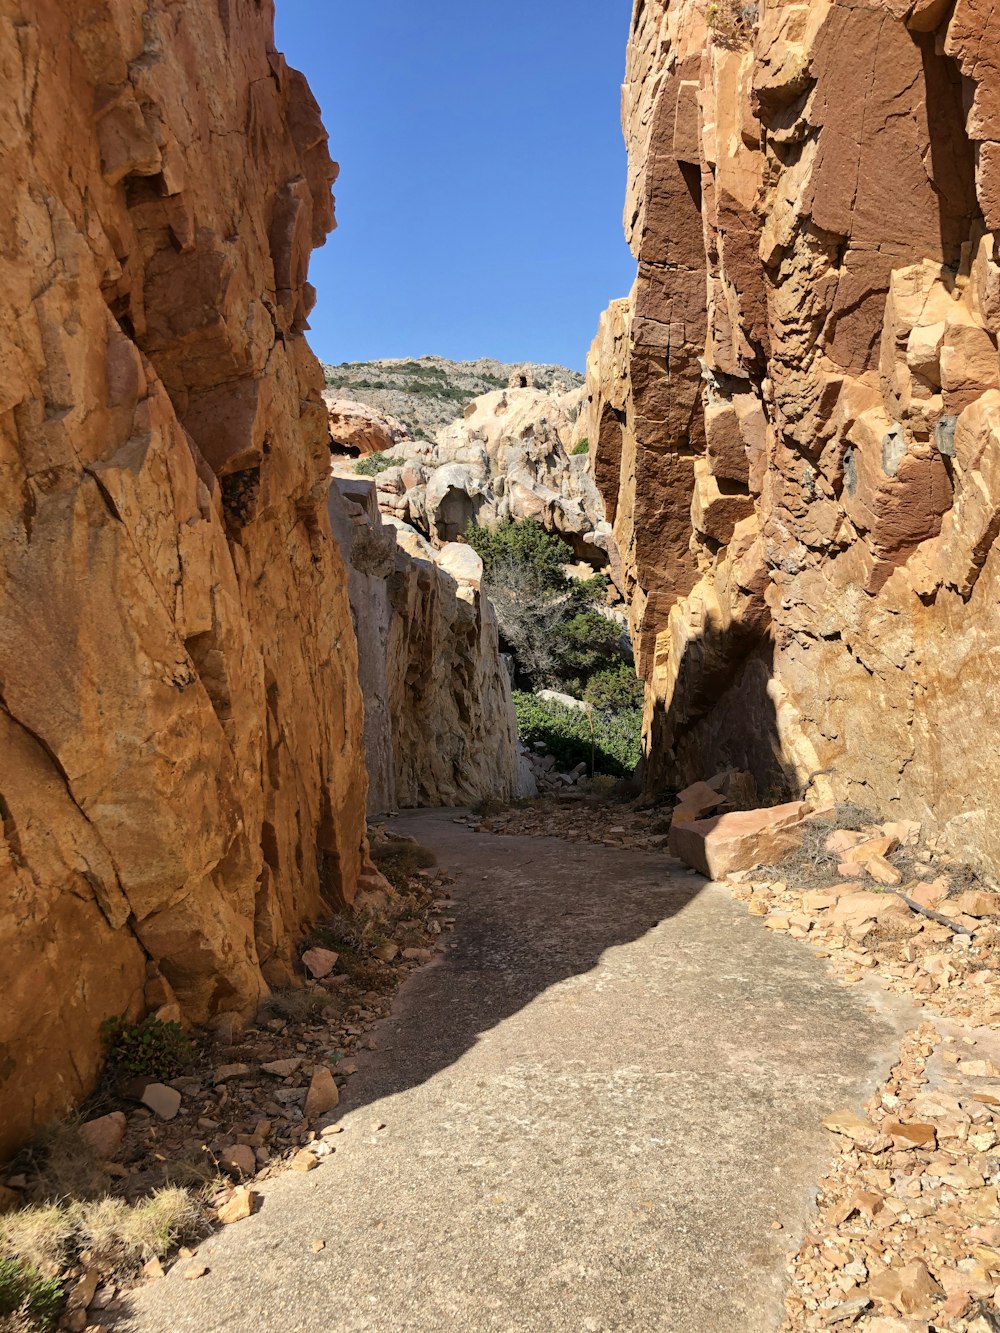 a path between rocky cliffs